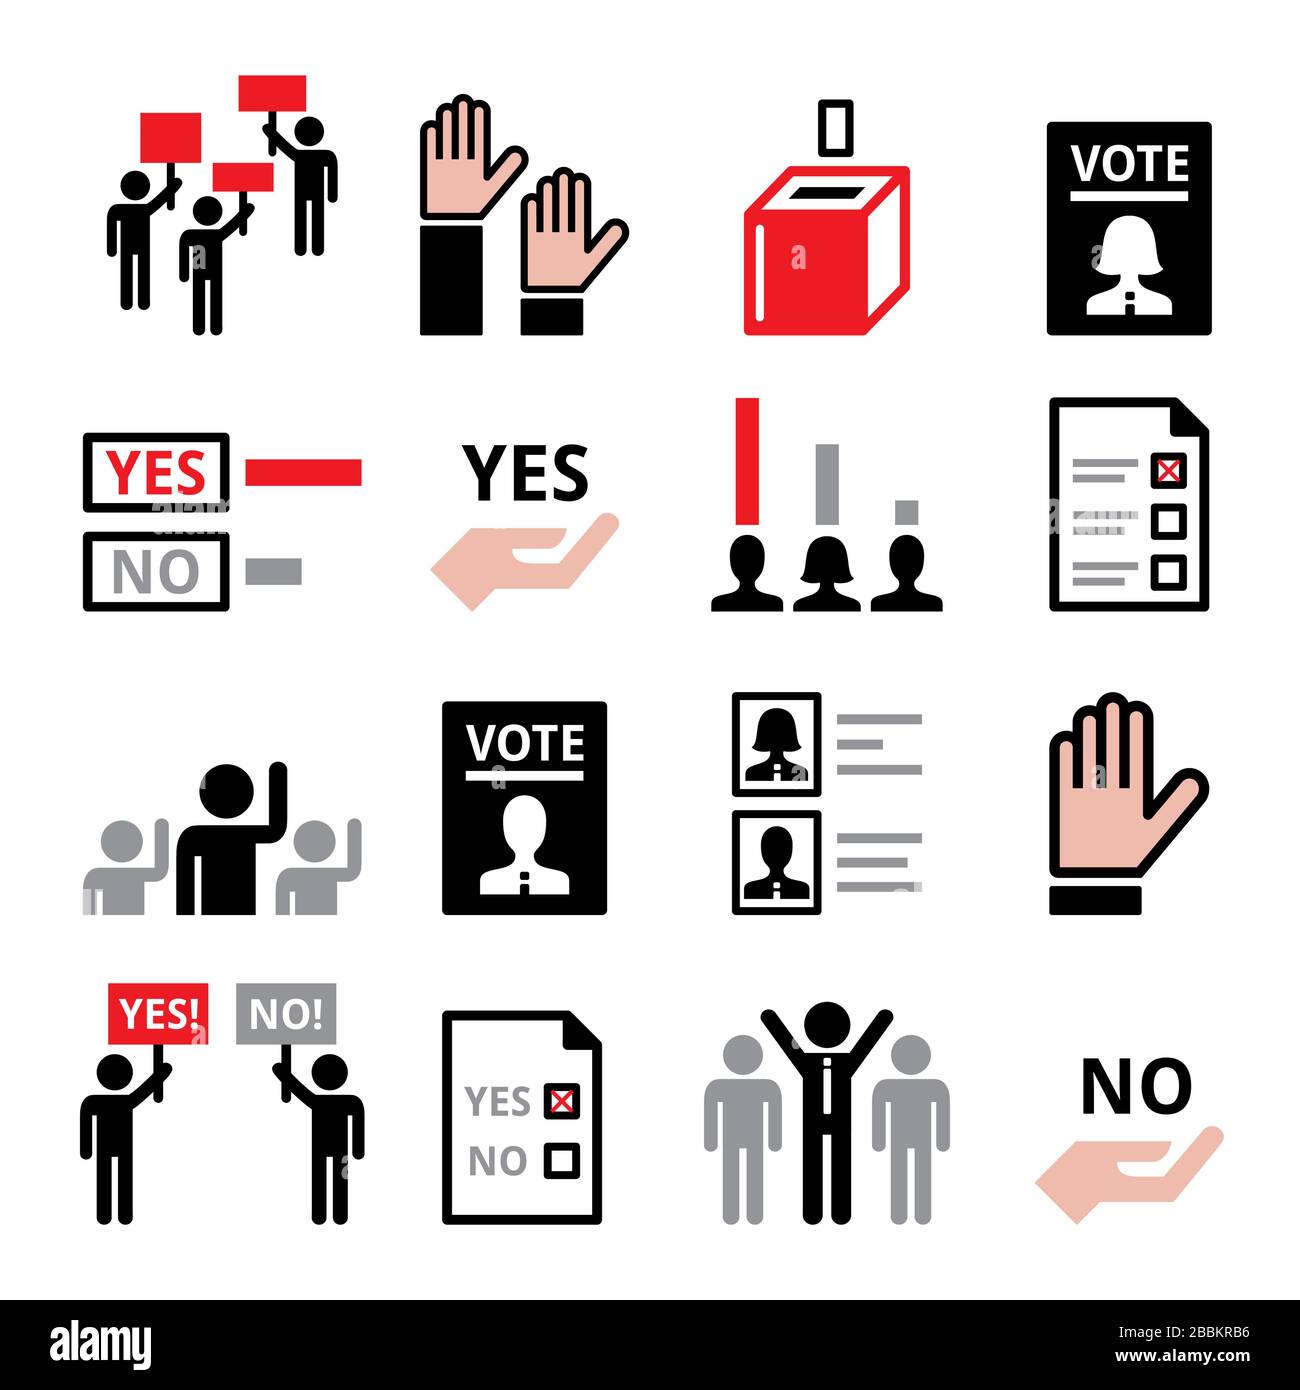 Democrazia, voto per il partito politico o nuovo presidente, società moderna con uguali diritti umani vettore icona set Illustrazione Vettoriale